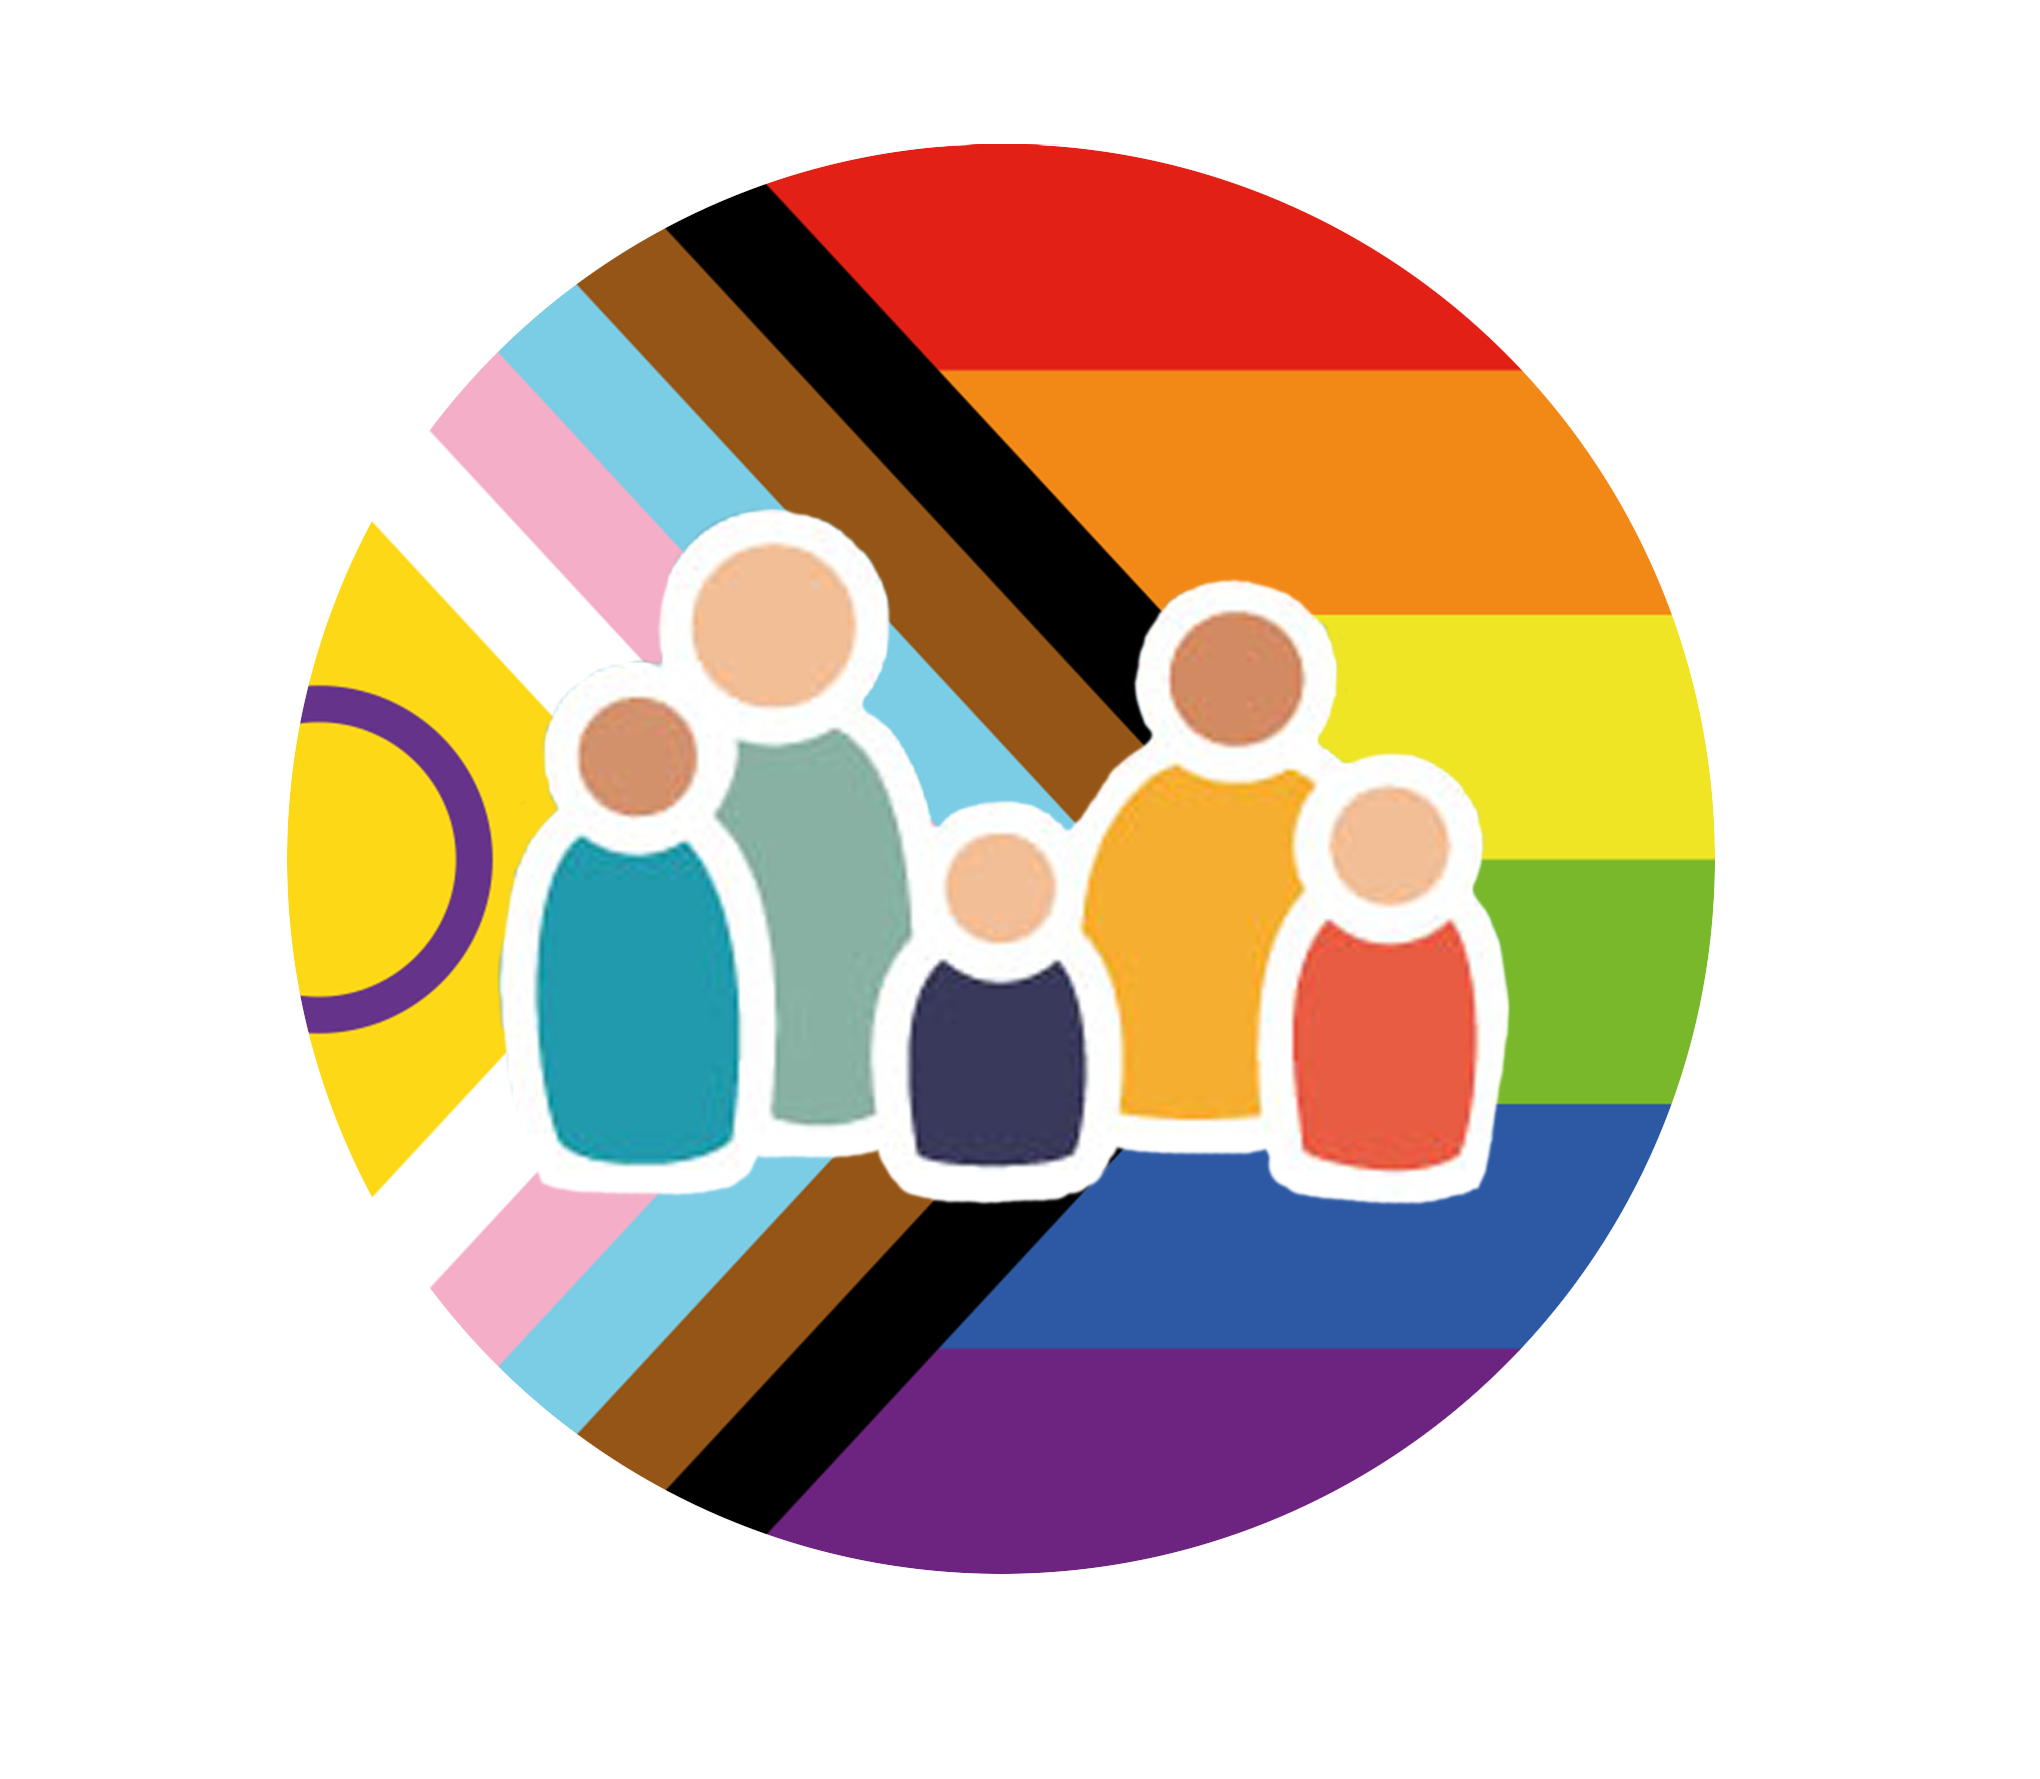 rundes Icon, das für Diversity steht, gezeigt werden die Figuren des STARK-Logos vor der Pride-Flag